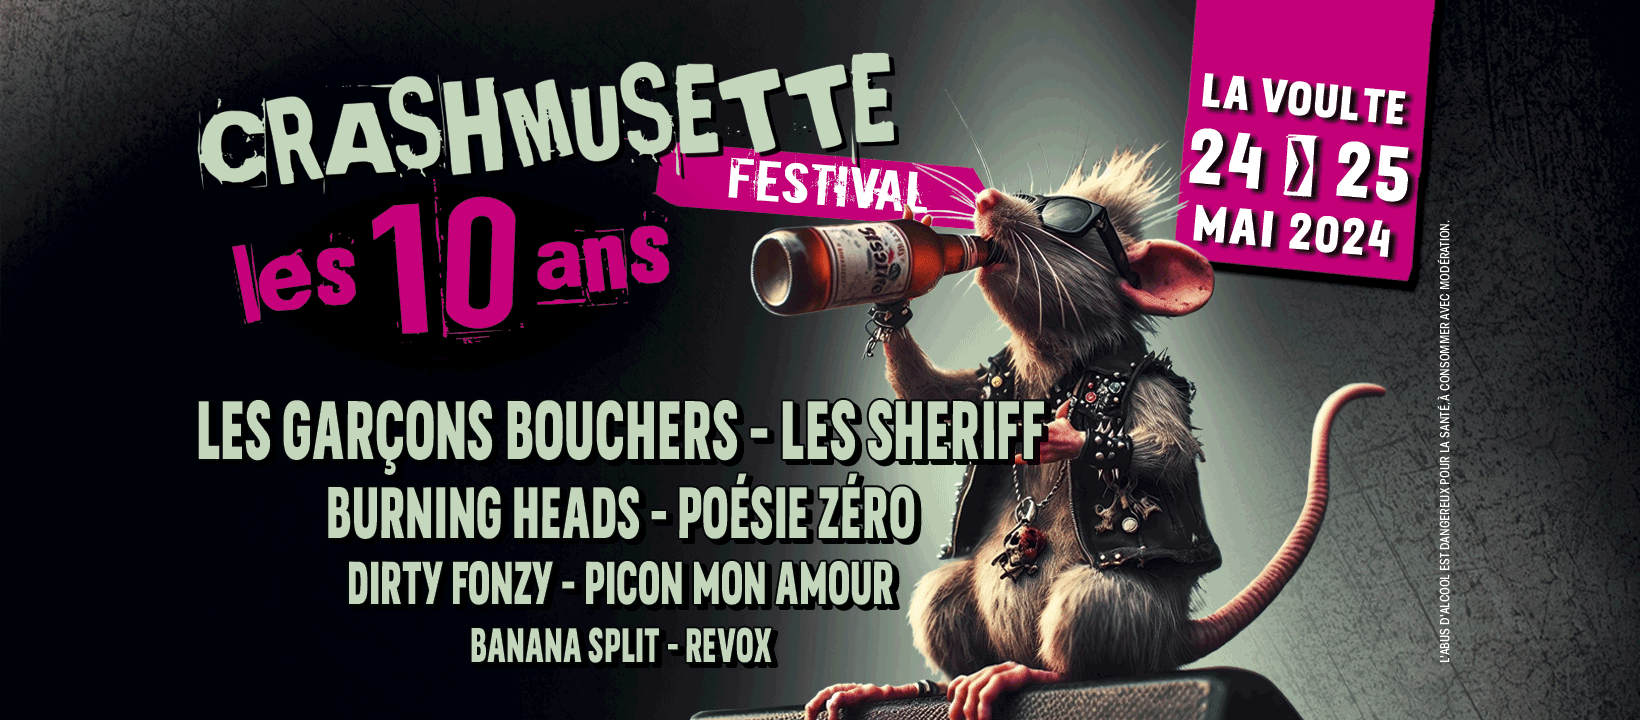 Alle leuke evenementen! : Festival de musique actuelle Crashmusette - Soirée-concert du samedi